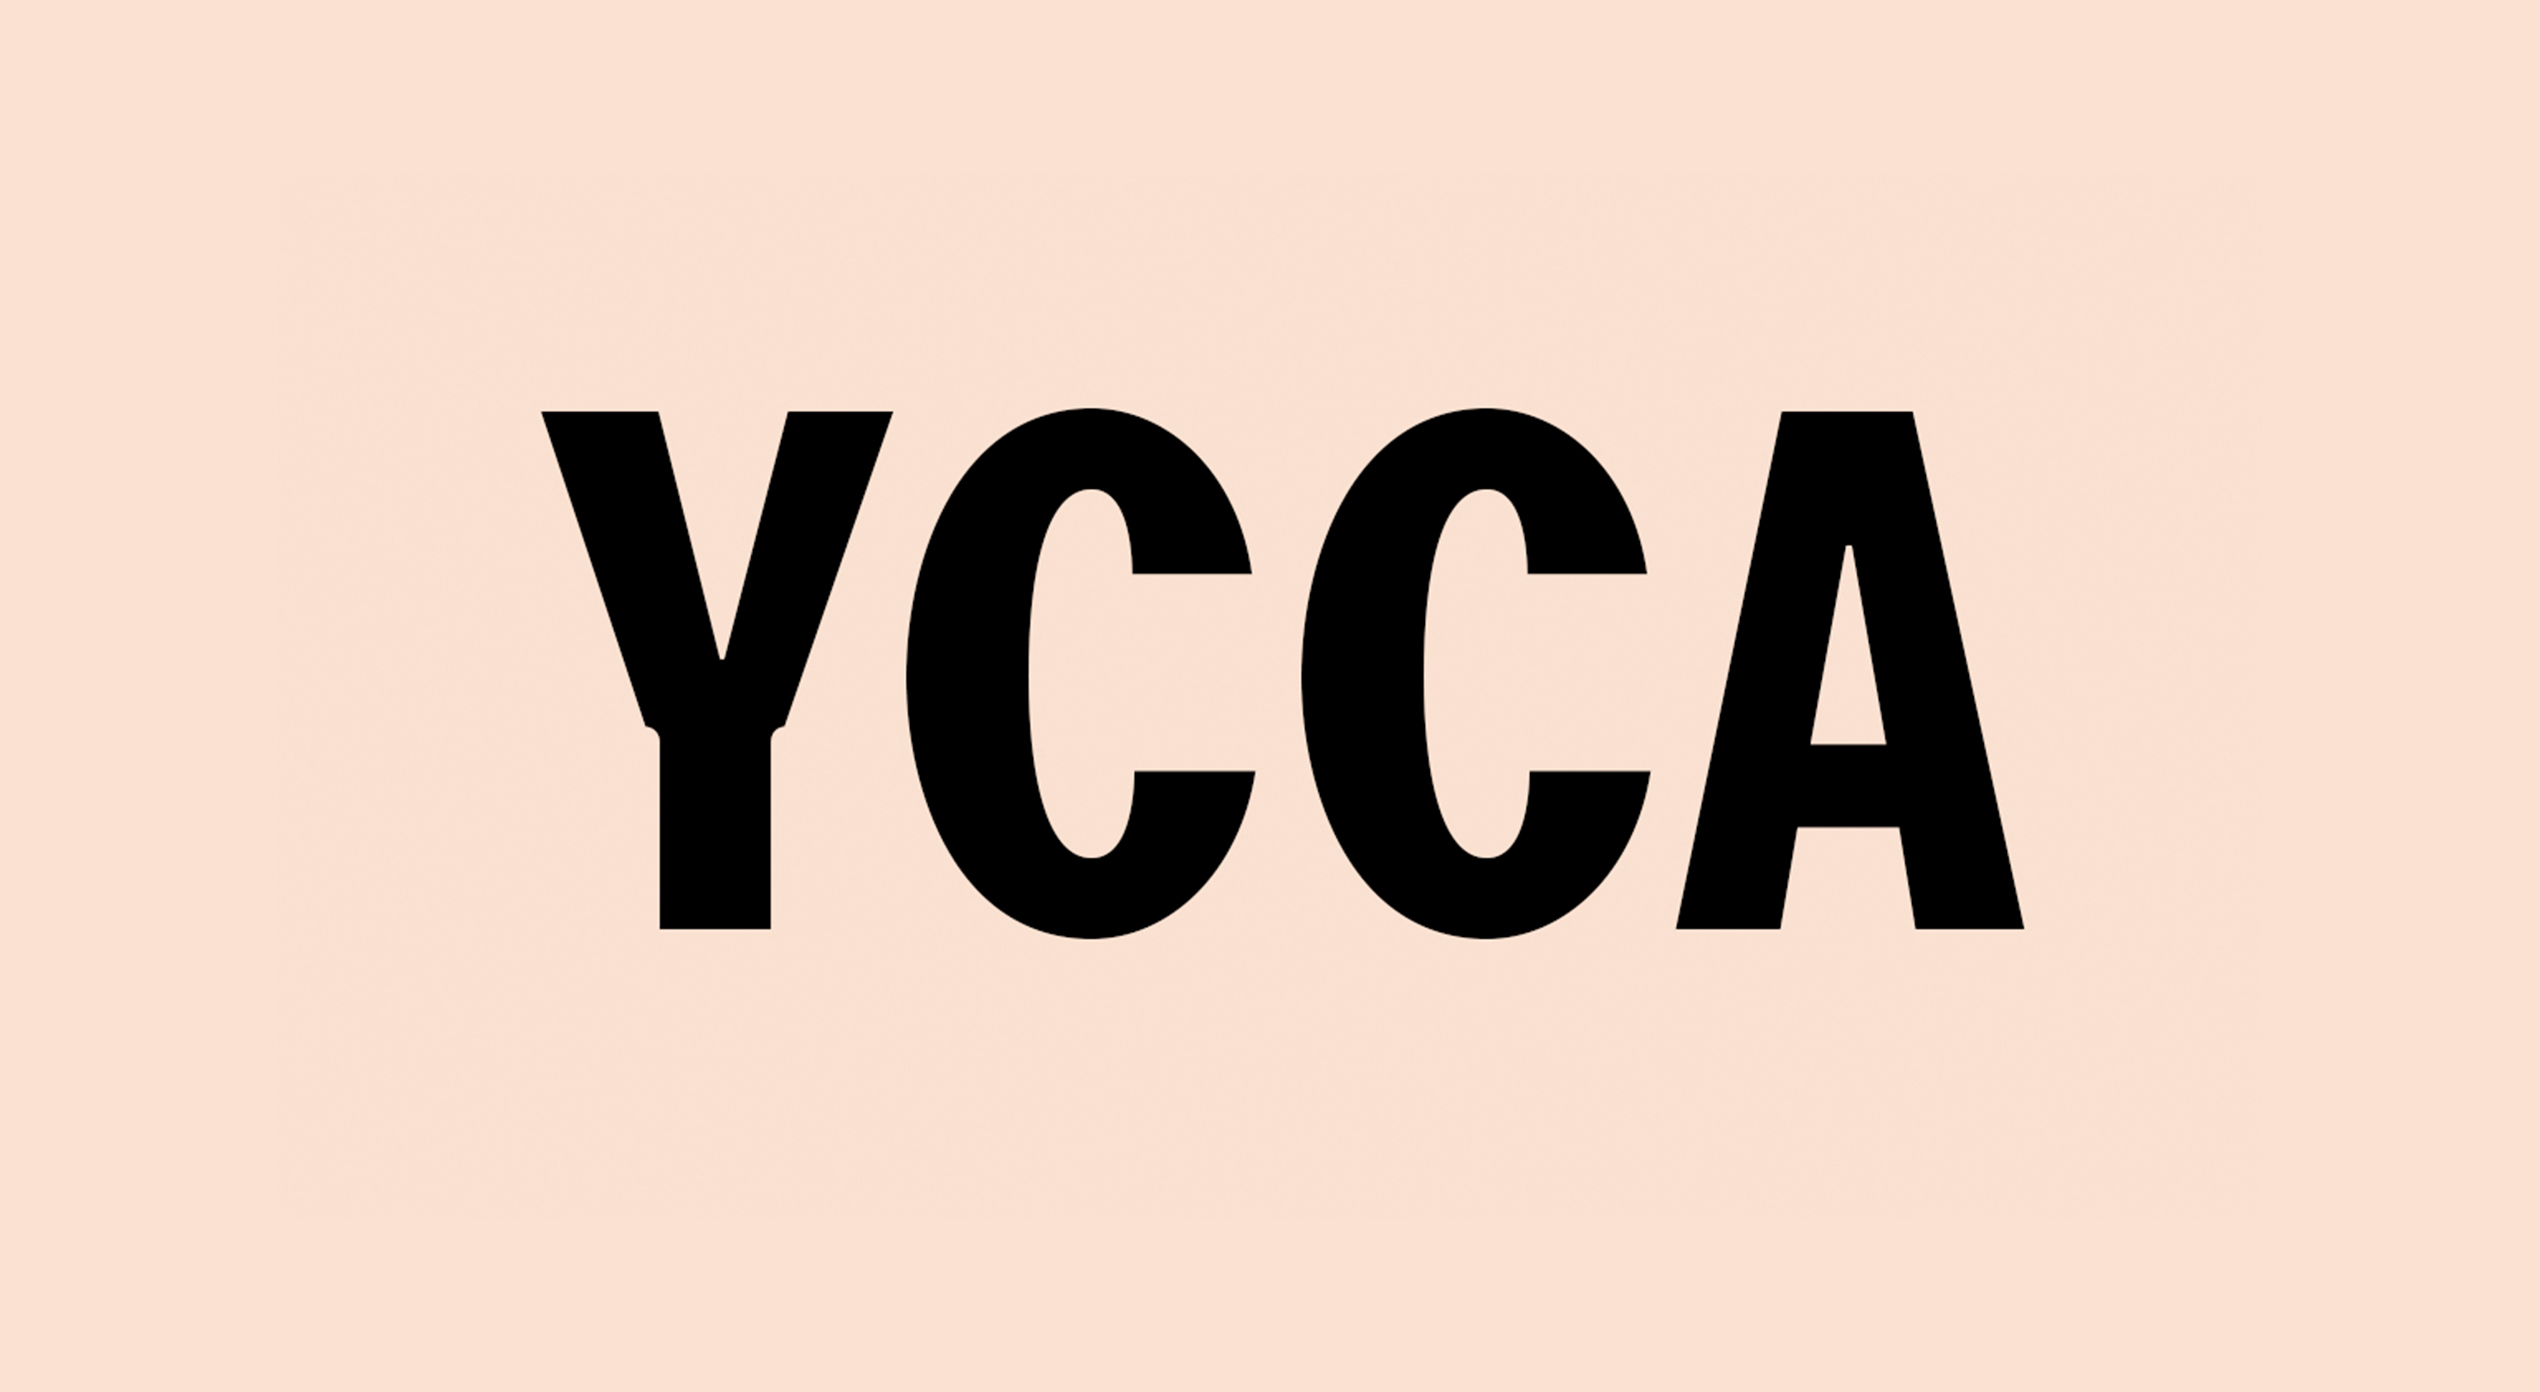 YCCA – shortlist